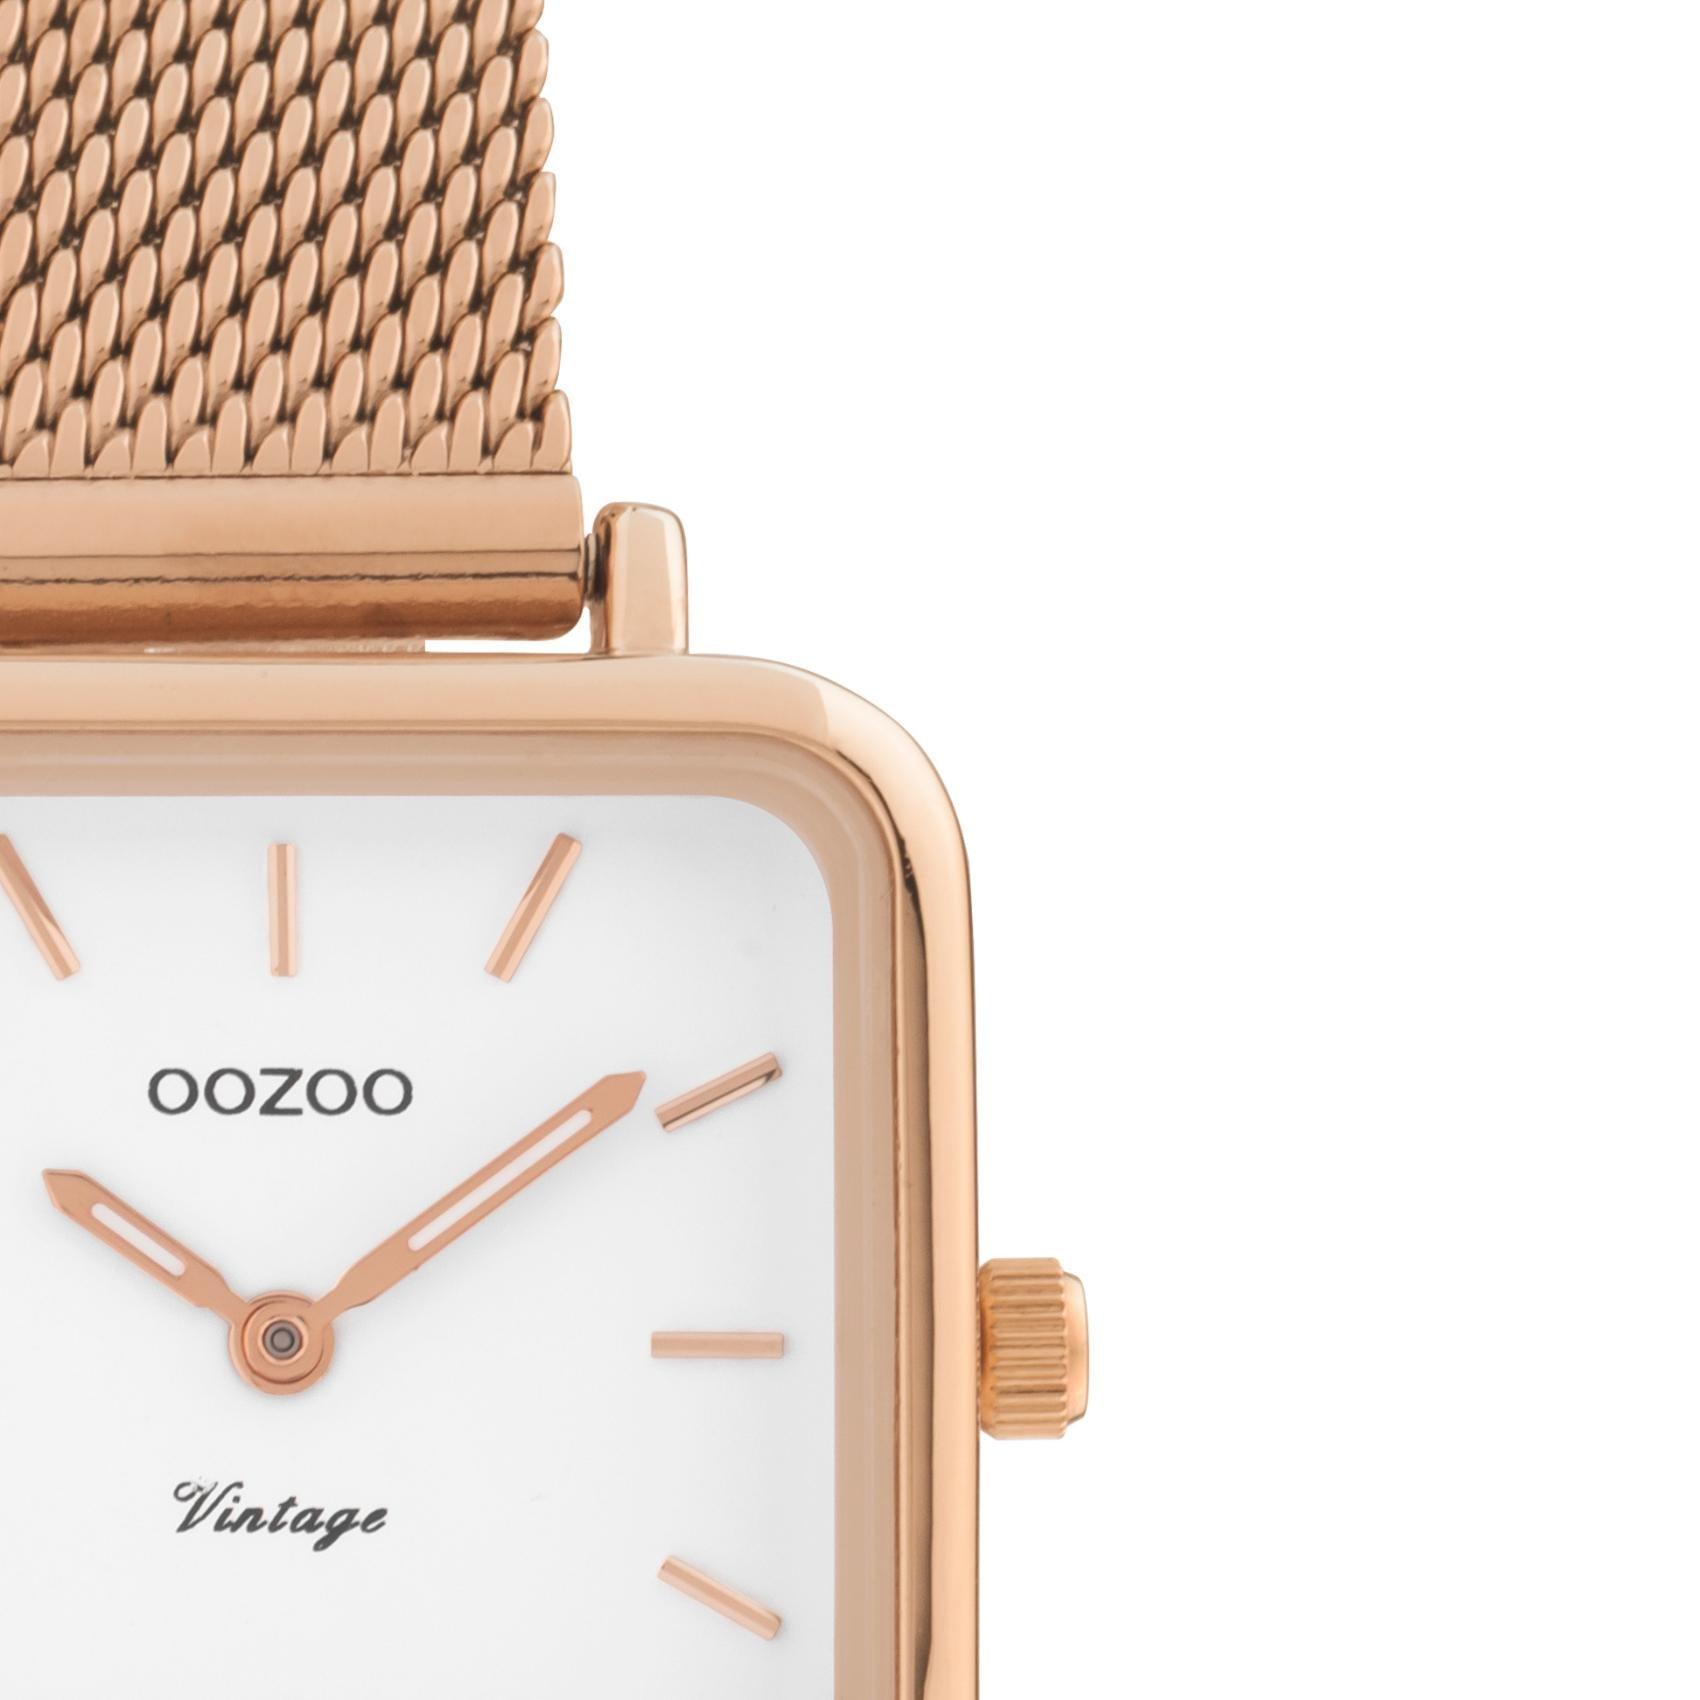 Τετράγωνο ρολόι Oozoo Vintage C10971 με ροζ χρυσό ατσάλινο μπρασελέ,άσπρο καντράν 26x26mm και μηχανισμό μπαταρίας quartz.